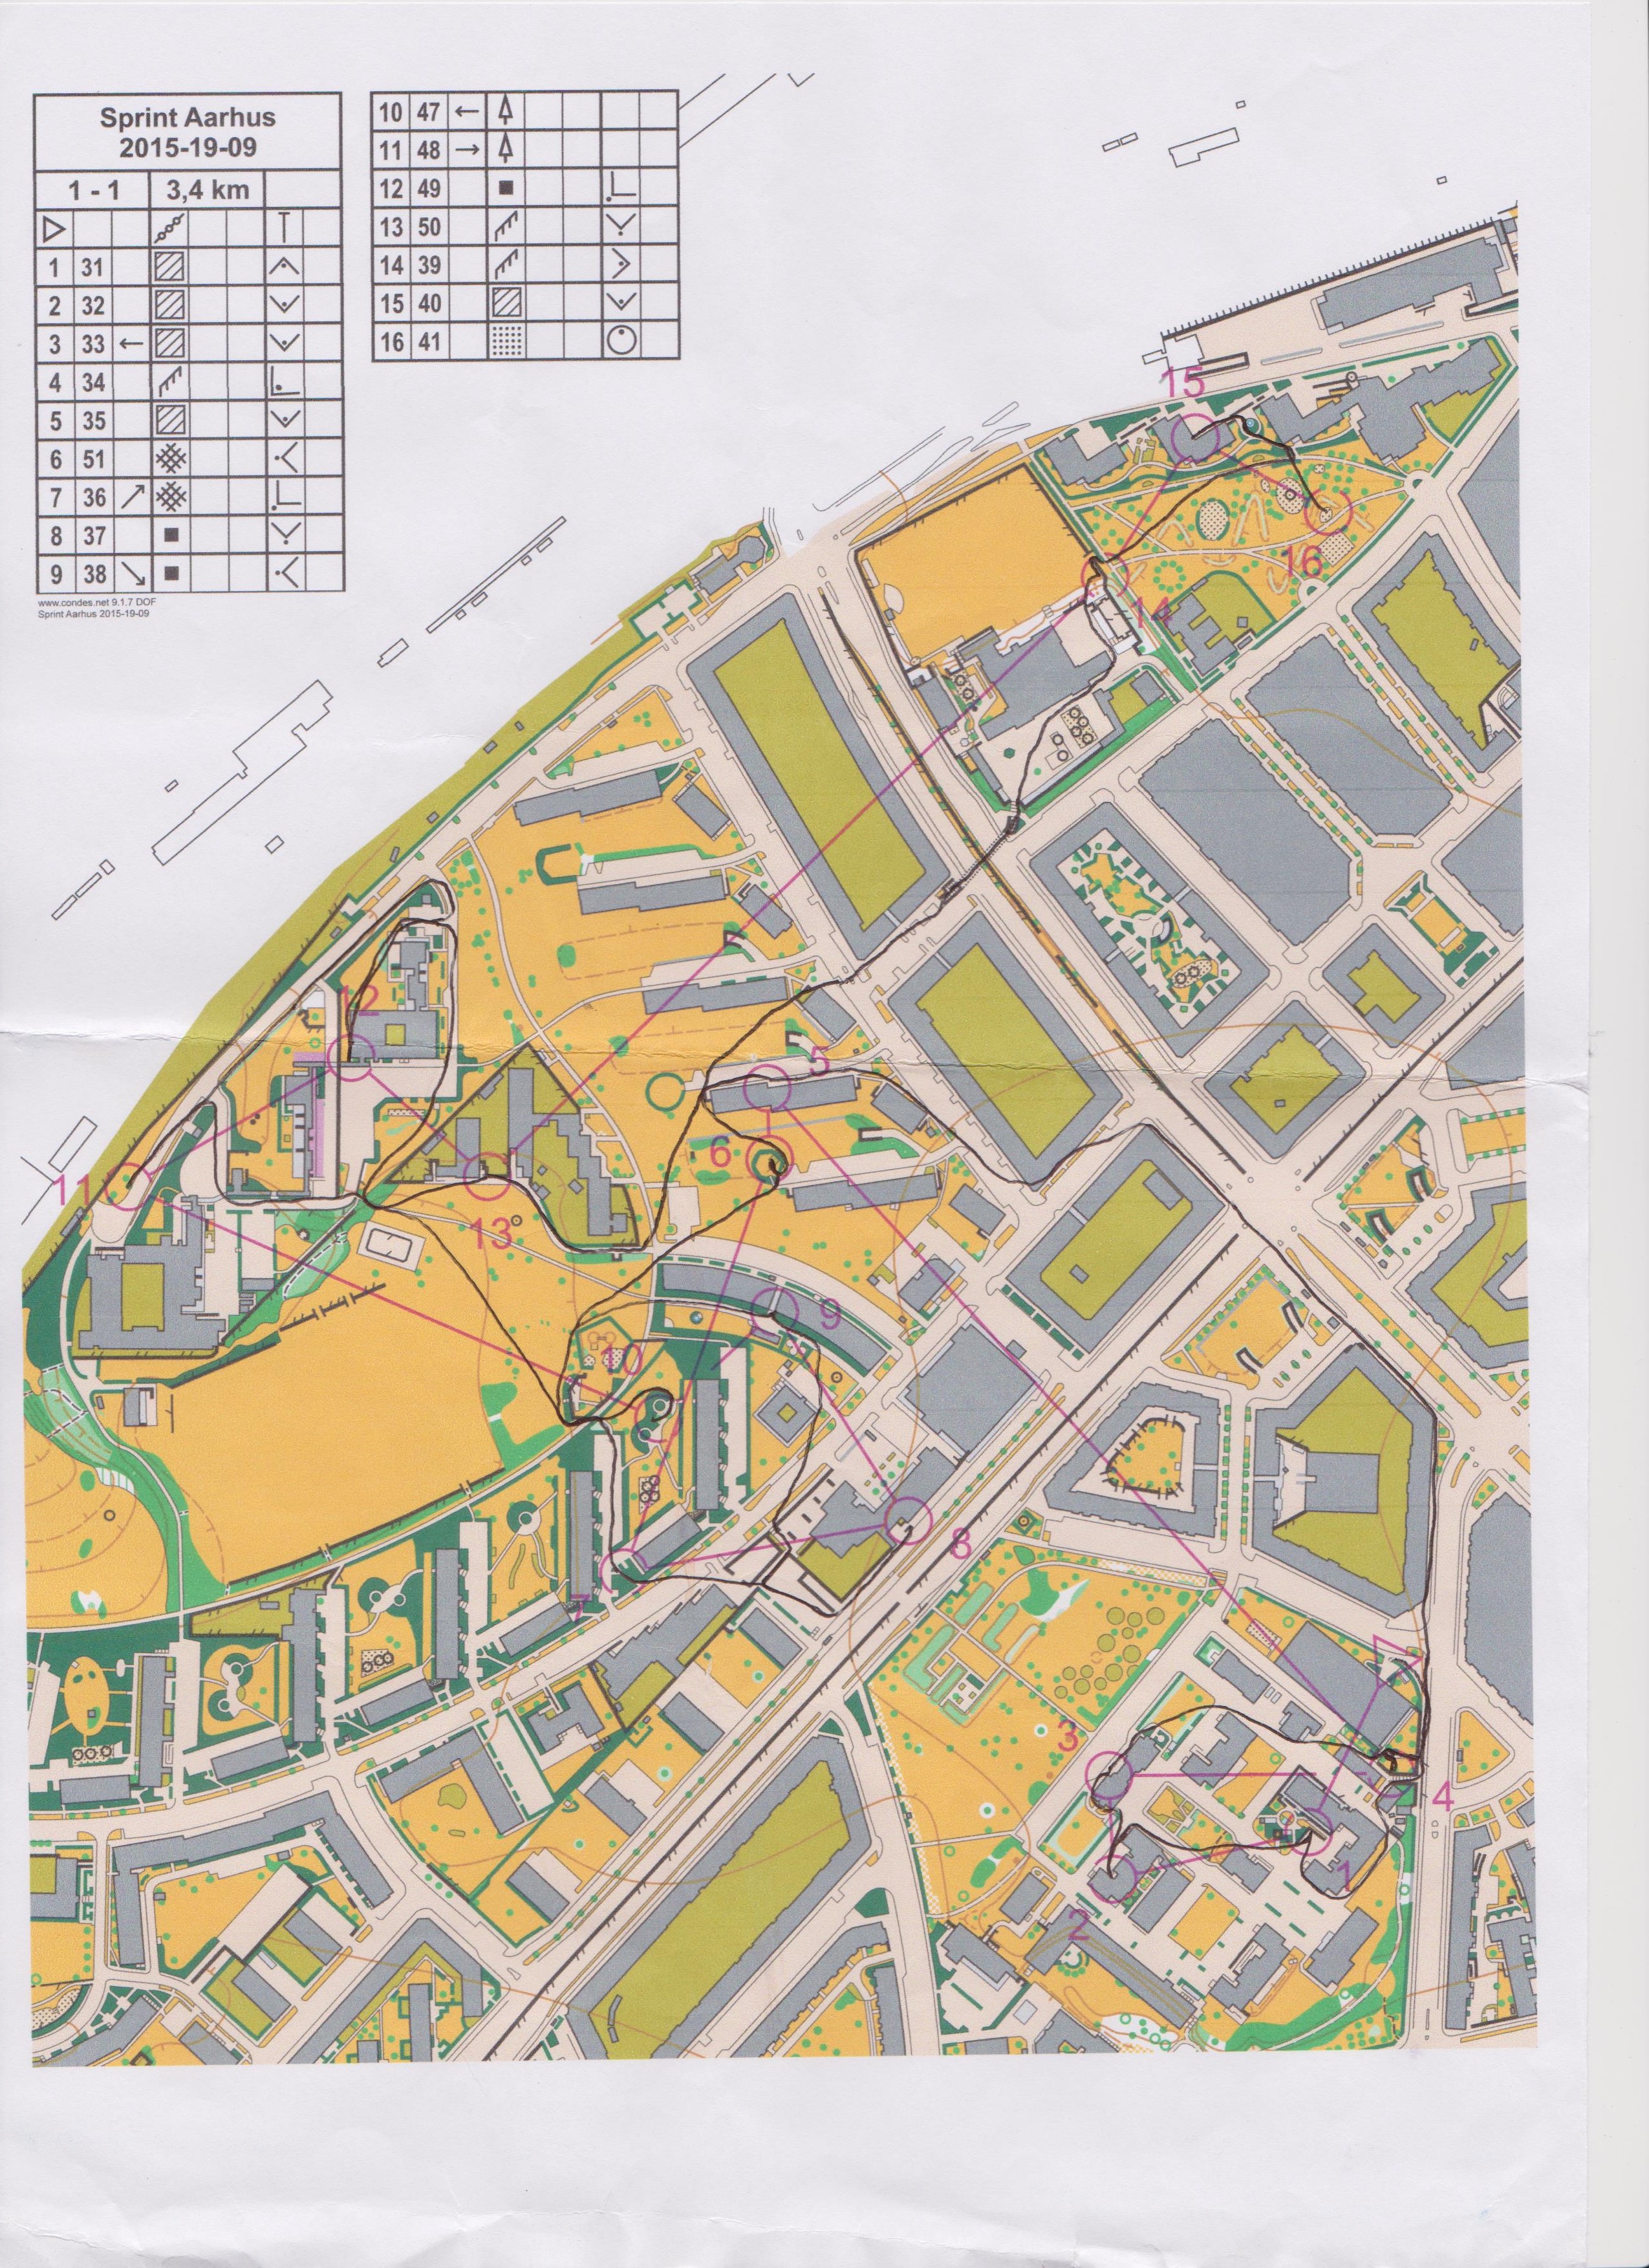 Sprinttræning i Aarhus del 1 (2015-09-28)